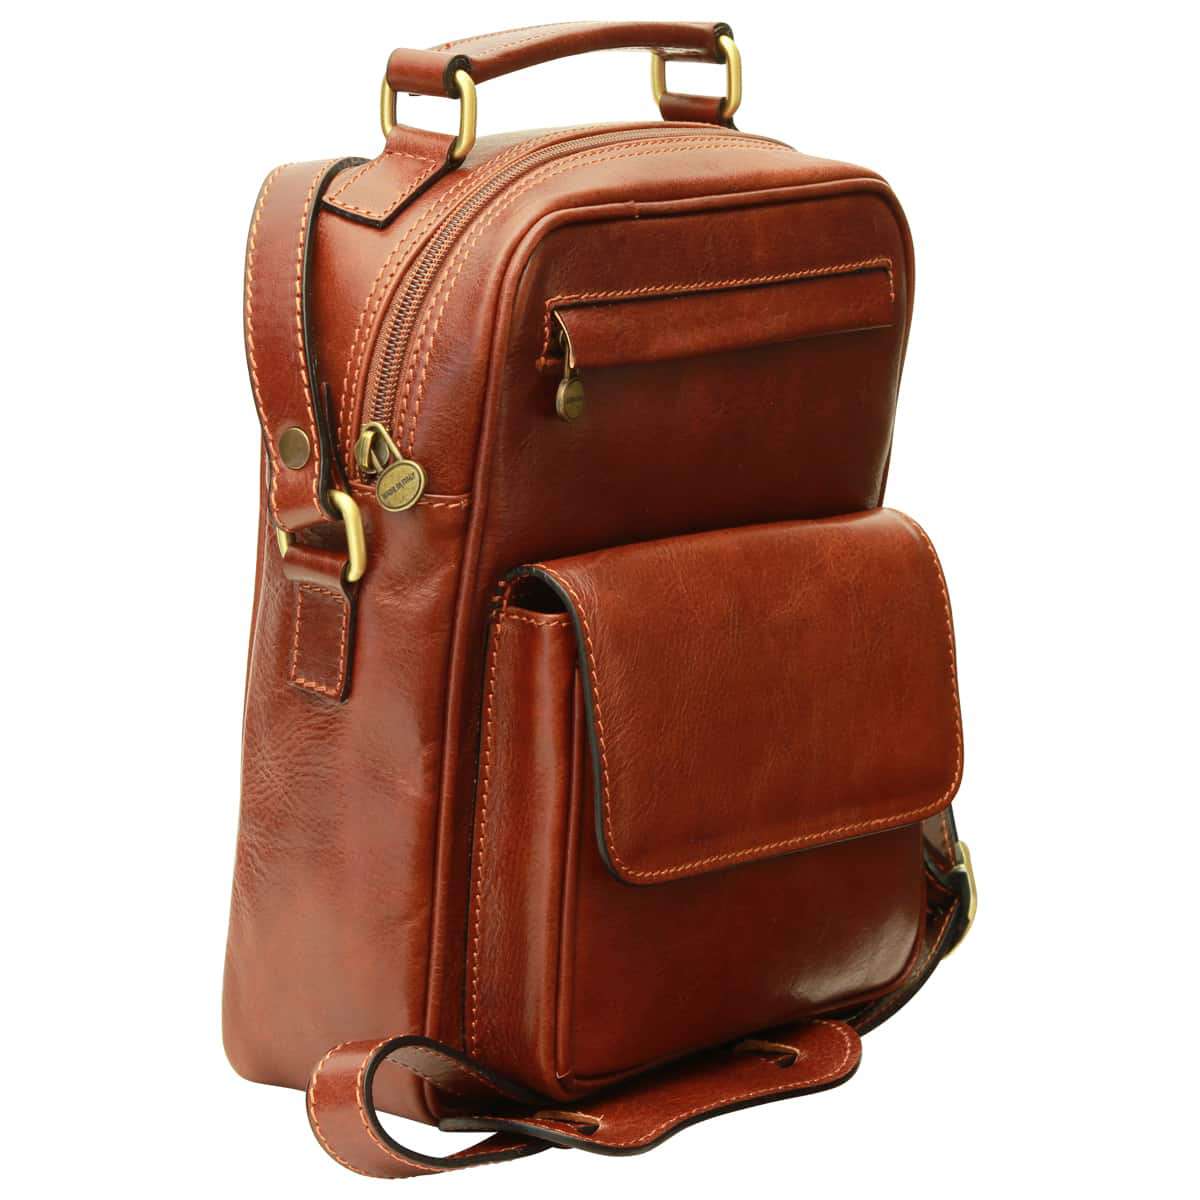 Leather Shoulder Bag with front pocket - Brown | 056405MA US | Old Angler Firenze